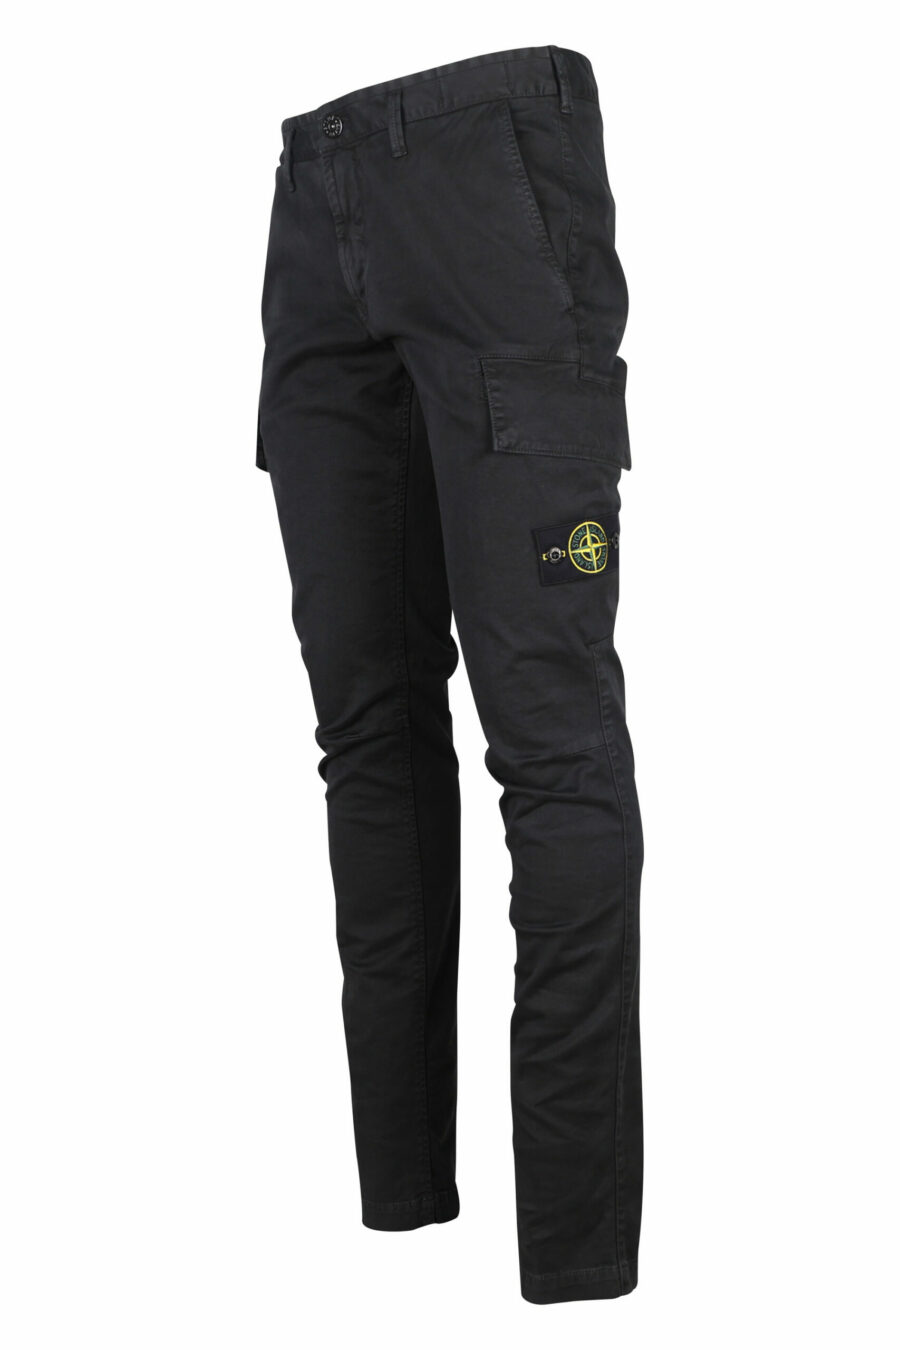 Schwarze Skinny-Hose mit seitlichem Logo-Patch - 8052572762253 1 skaliert